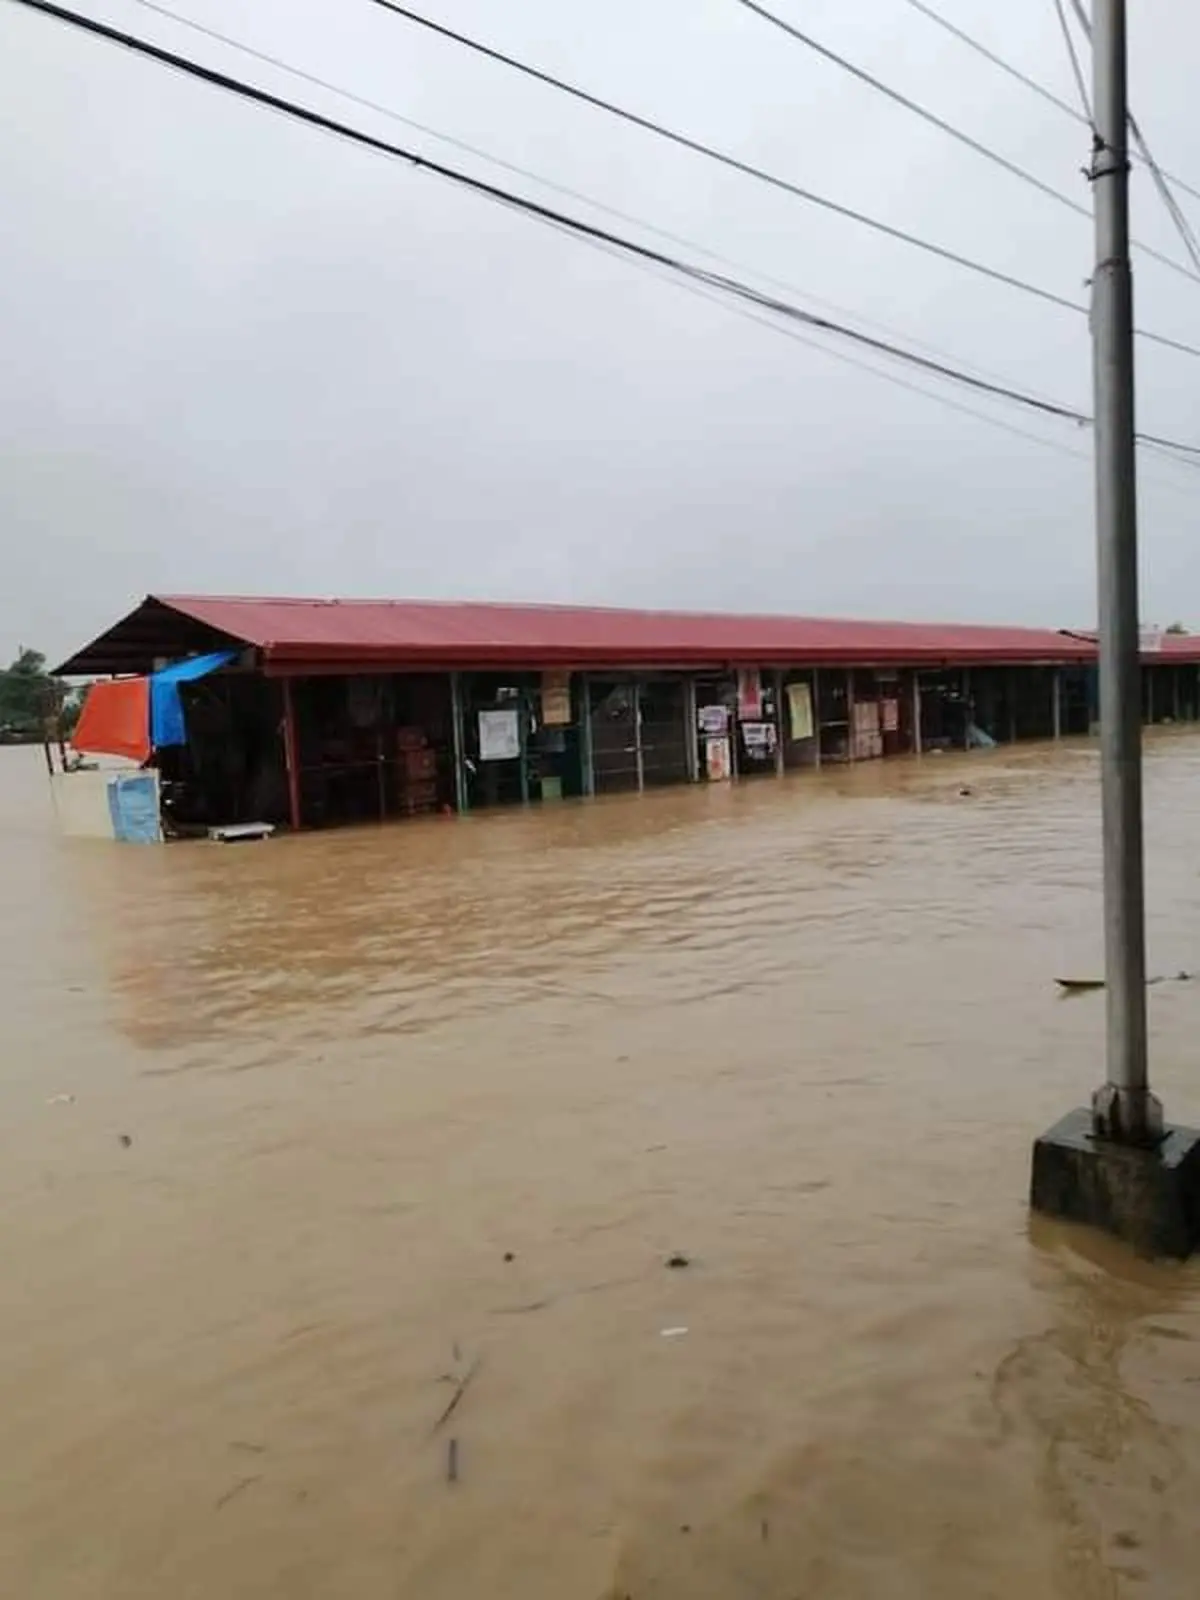 طوفان استوایی مگی در فیلیپین جان صدها نفر را گرفت+ویدئو 